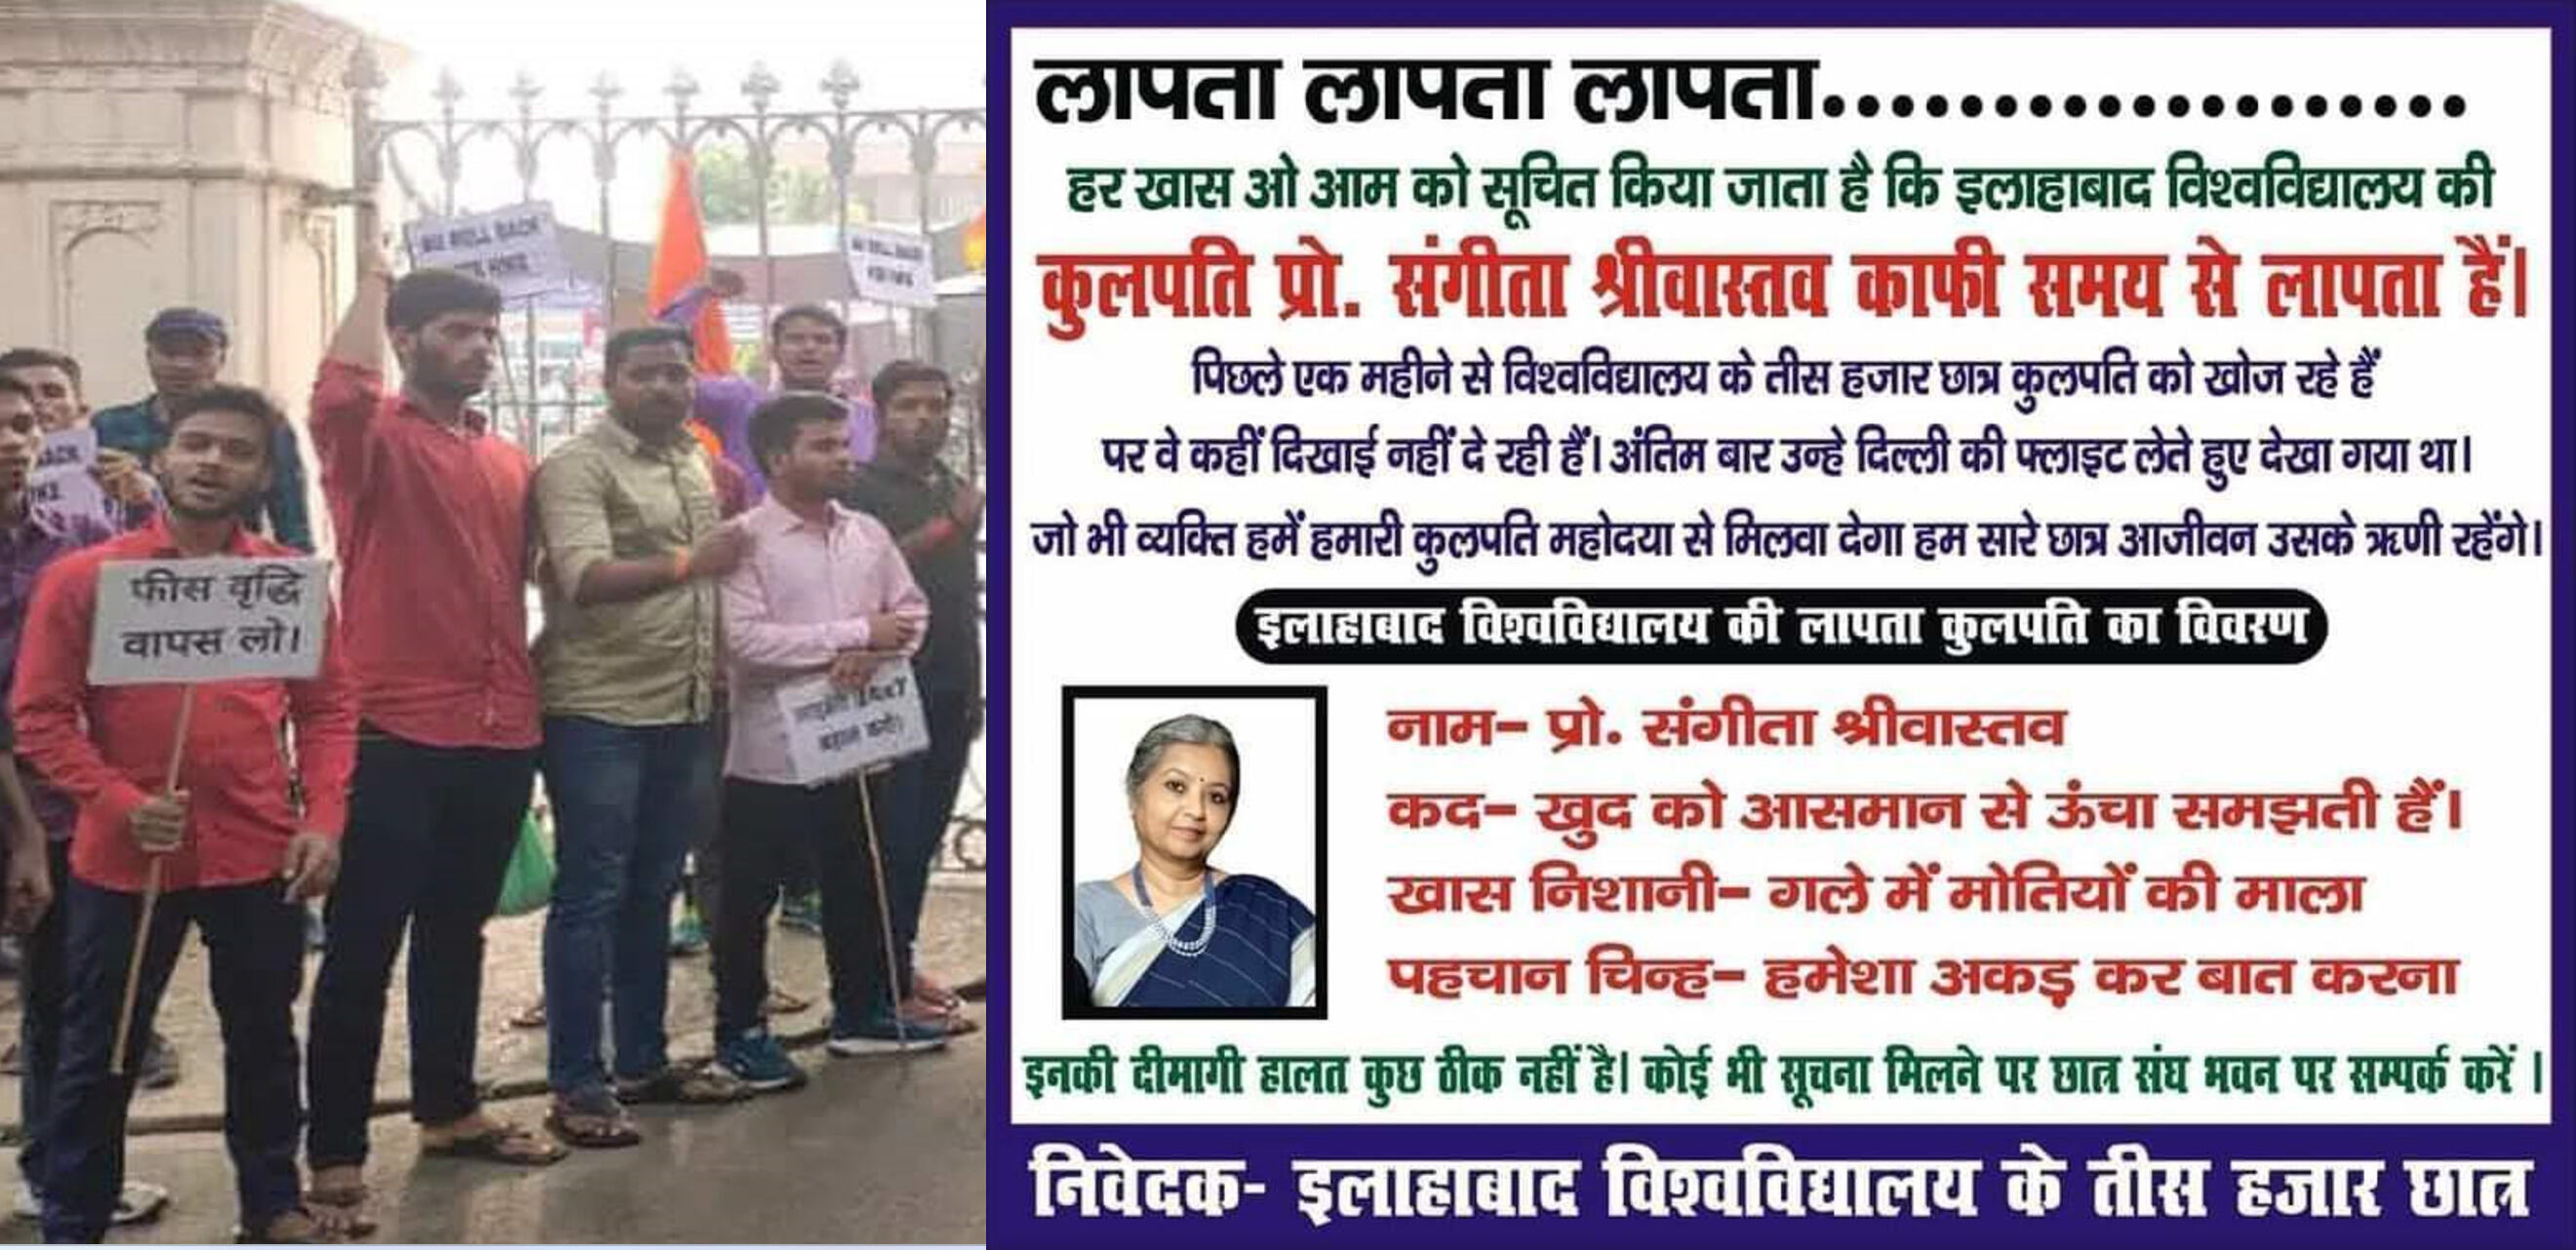 Prayagraj News : फीस वृद्धि को लेकर आंदोलनरत छात्रों ने जारी किया वीसी के लापता होने का पोस्टर, छात्रों से मिलने पहुँचे ये लोग...